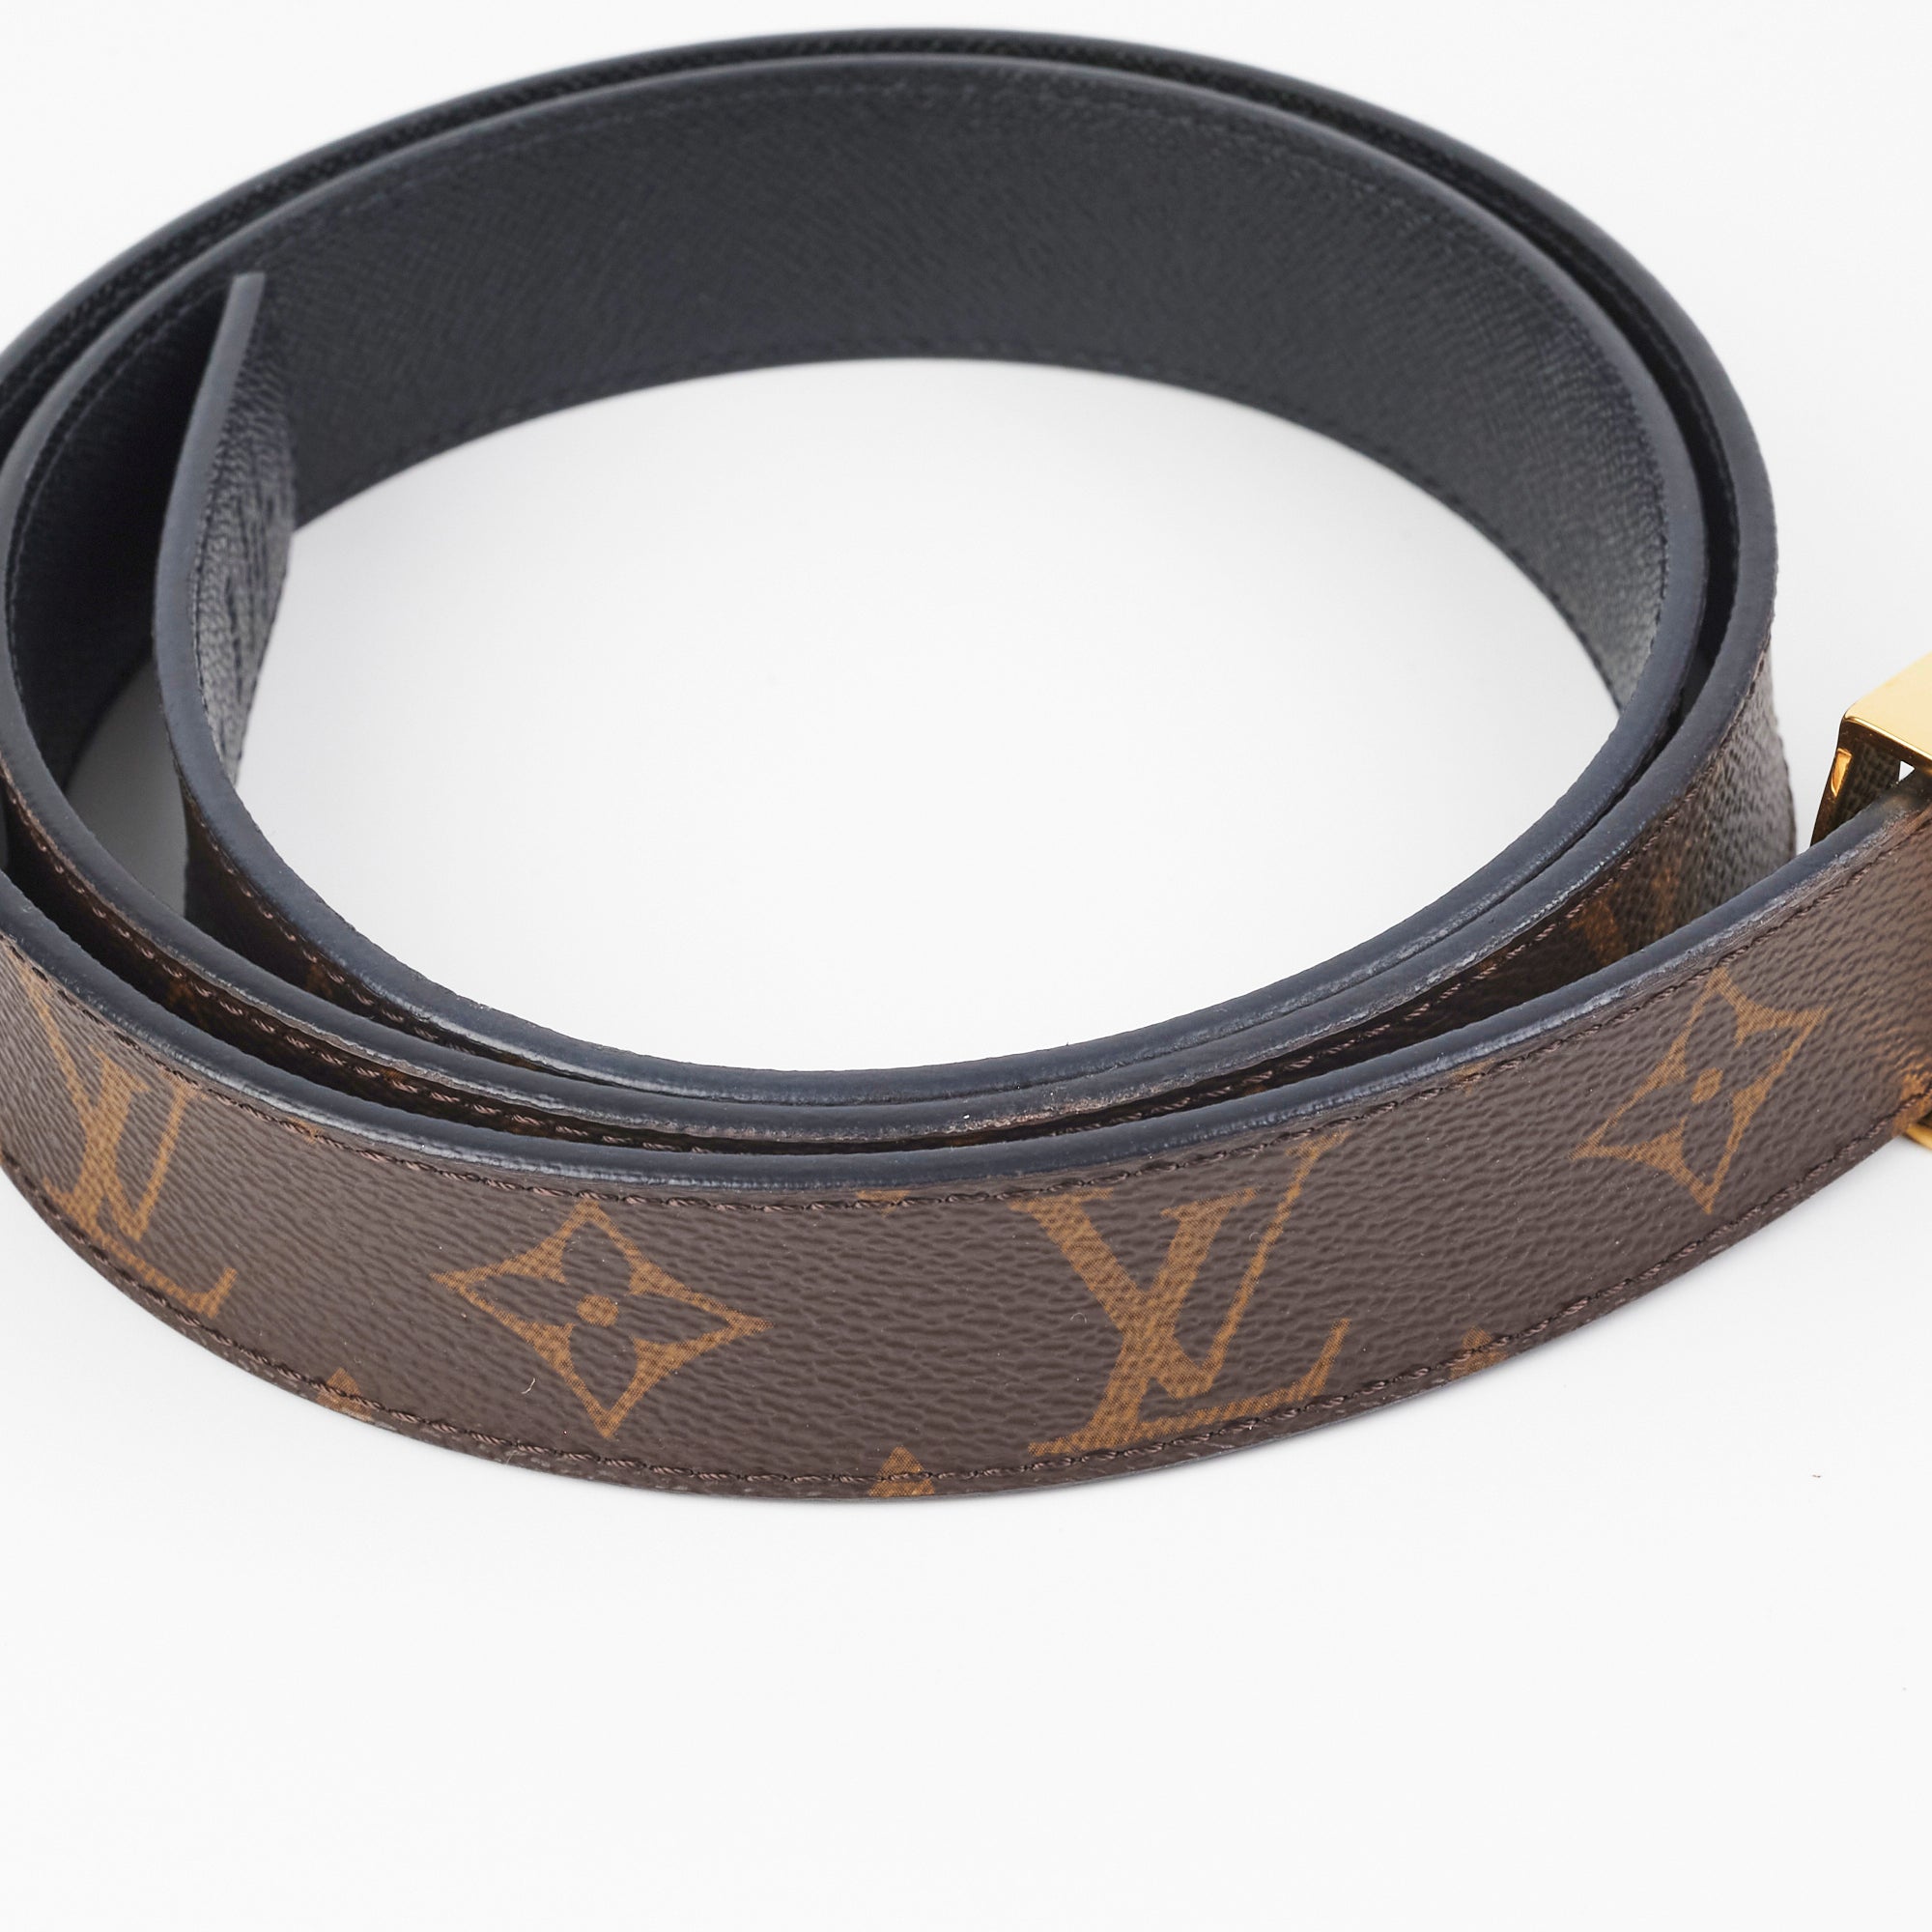 Authentic Louis Vuitton belt Brown Monogram Leather size 95/38 